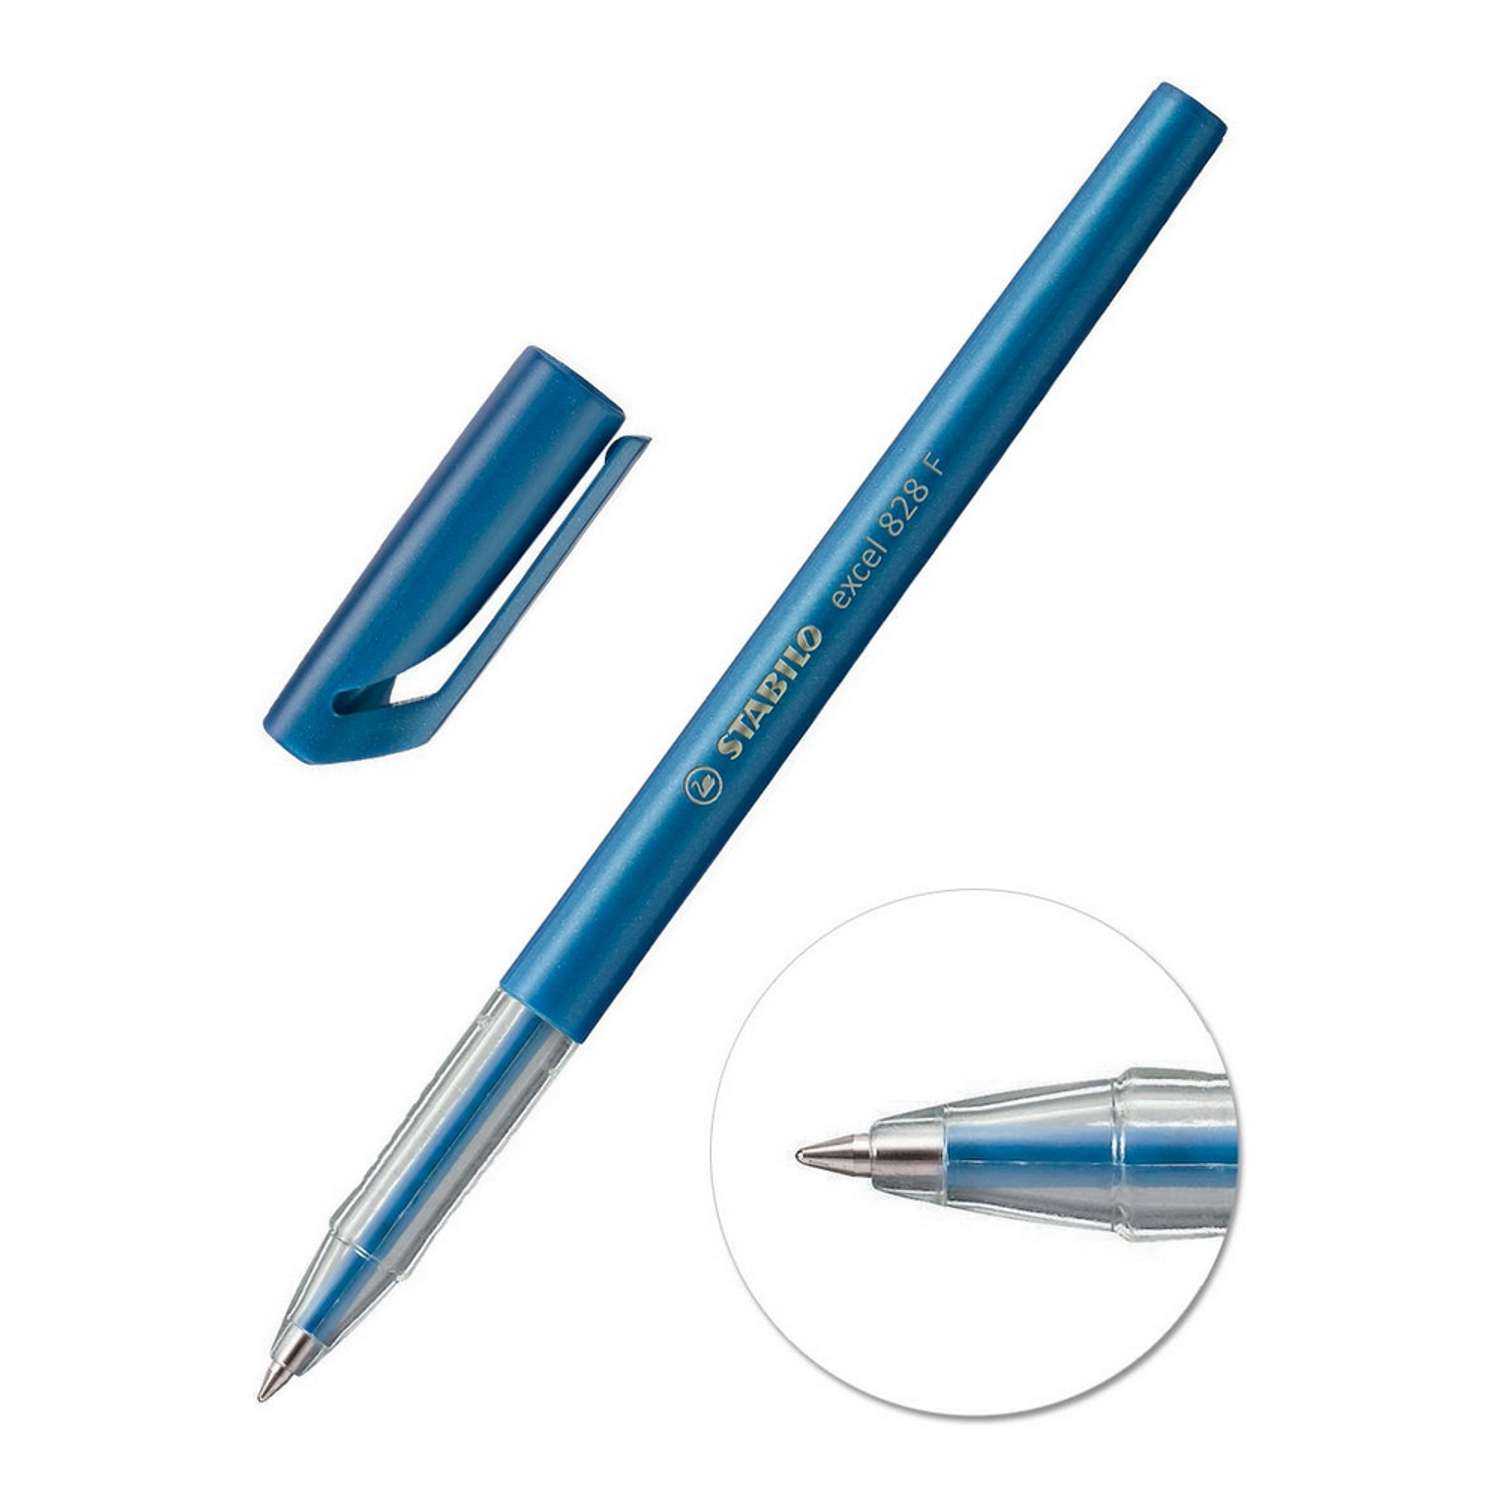 Ручка шариковая STABILO excel 828 3 штуки 0.38мм синие масляные чернила 828/41-3B - фото 2